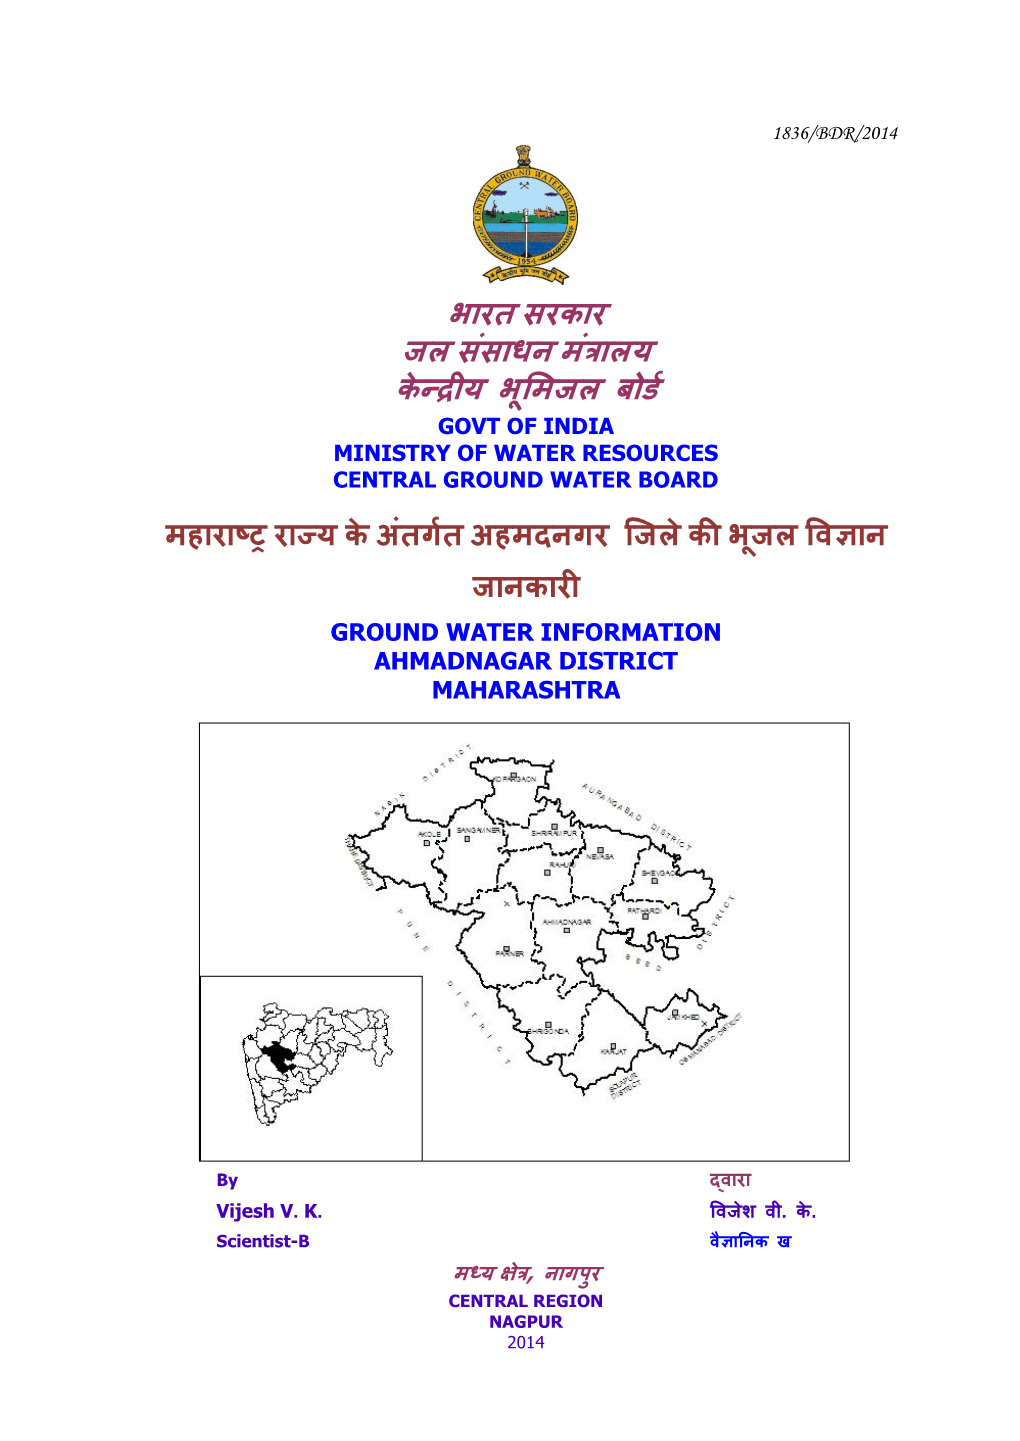 Ahmadnagar District Maharashtra